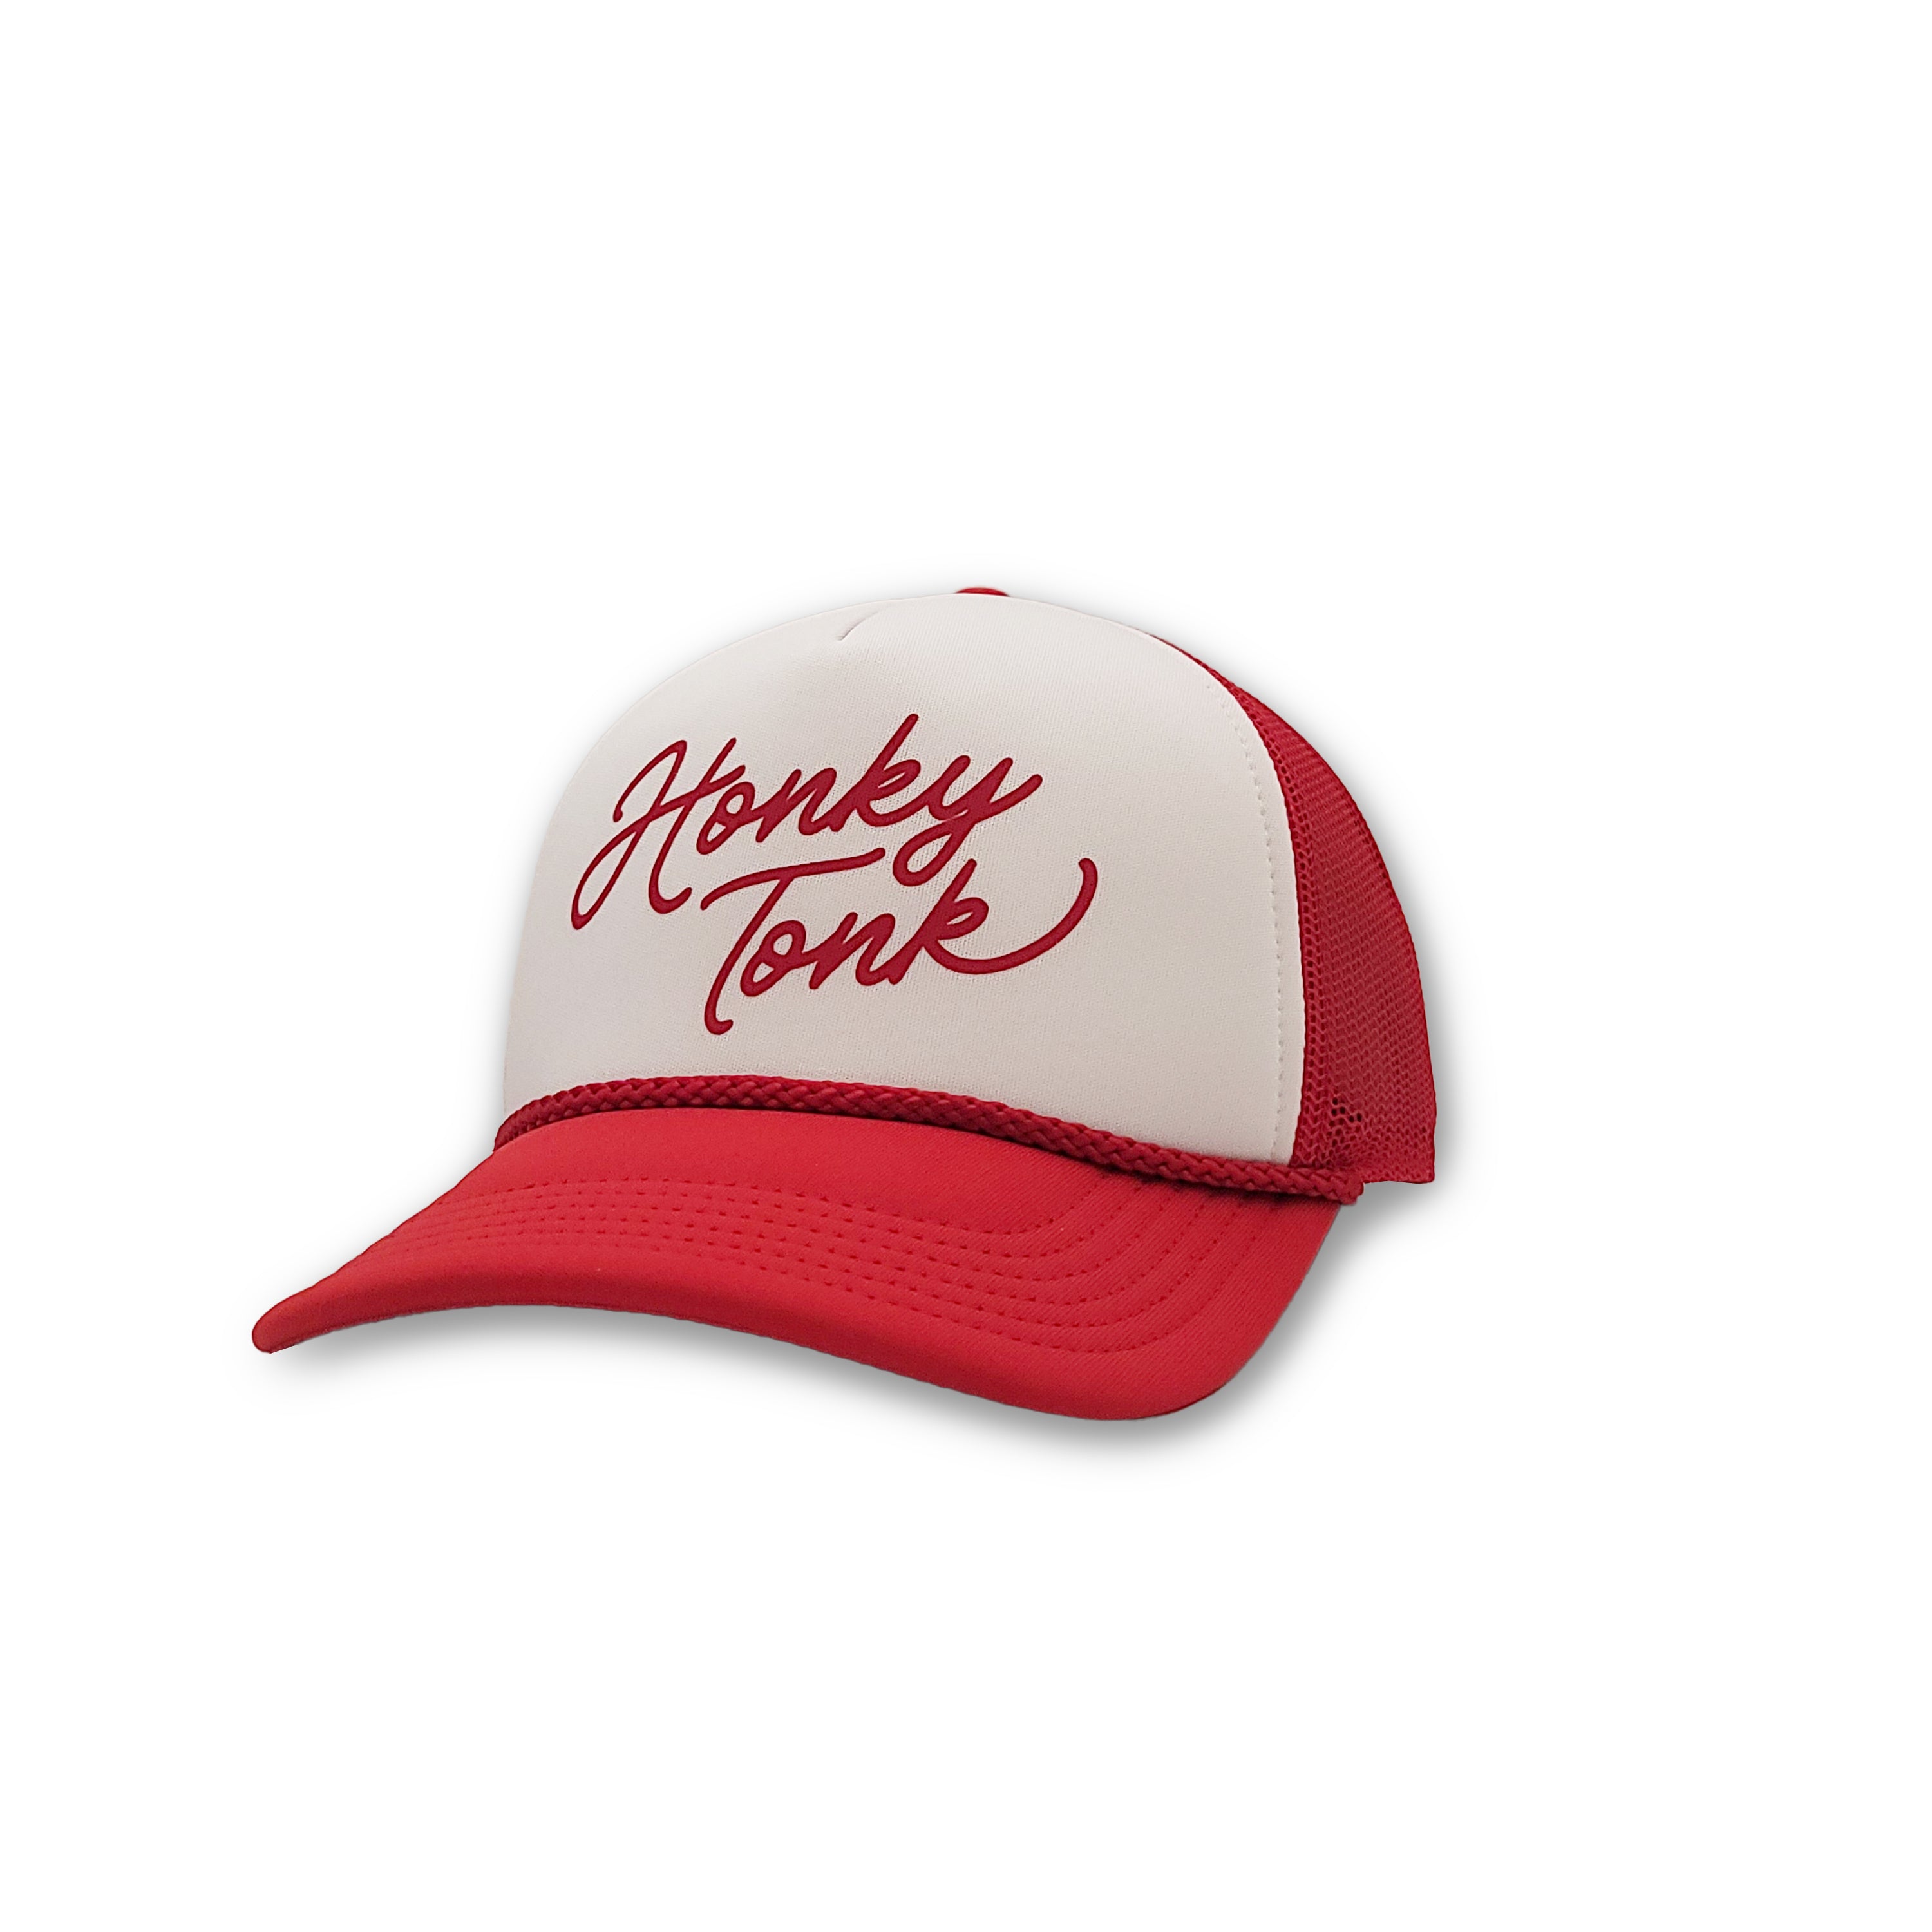 Honky Tonk Foam Trucker Cap Red/White